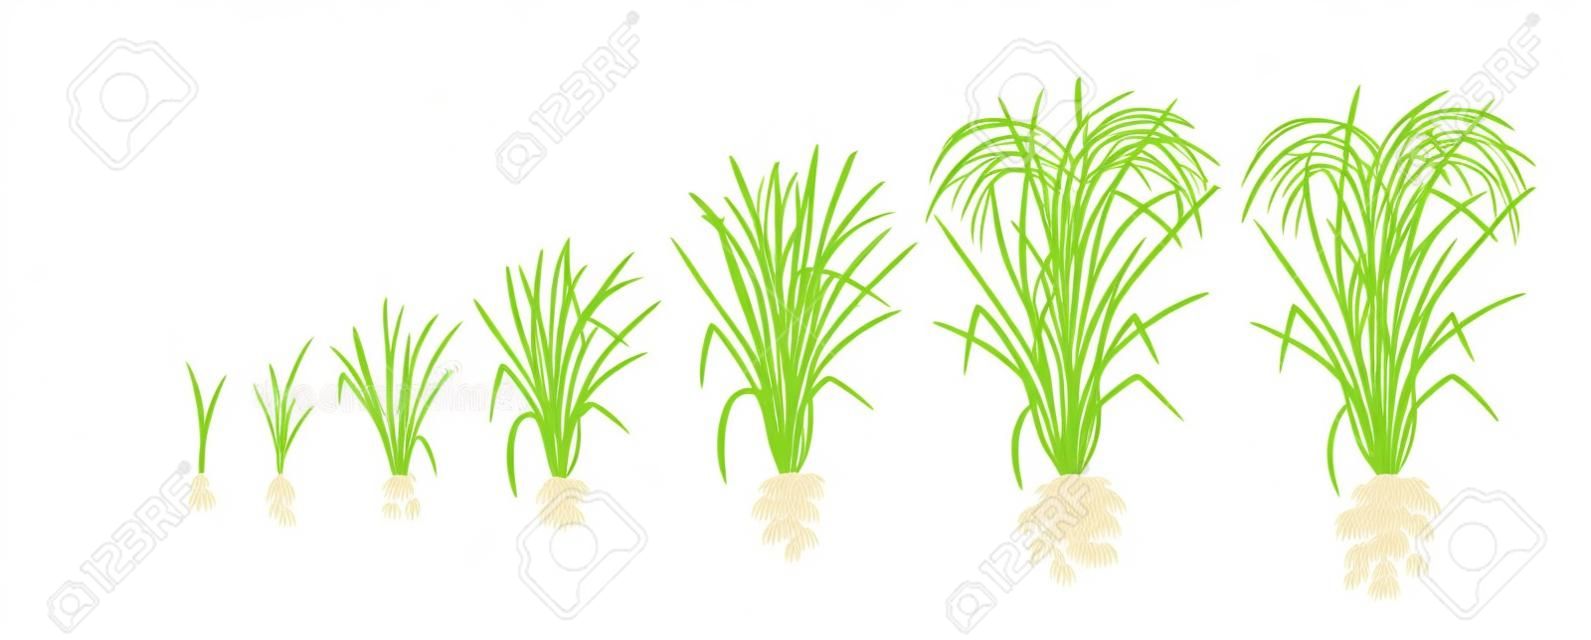 Fasi di crescita della pianta di riso. Fasi di aumento del riso. Illustrazione vettoriale. Oryza sativa. Periodo di maturazione. Il ciclo di vita. Usa fertilizzanti. Su sfondo bianco. È il prodotto agricolo con la terza produzione mondiale.